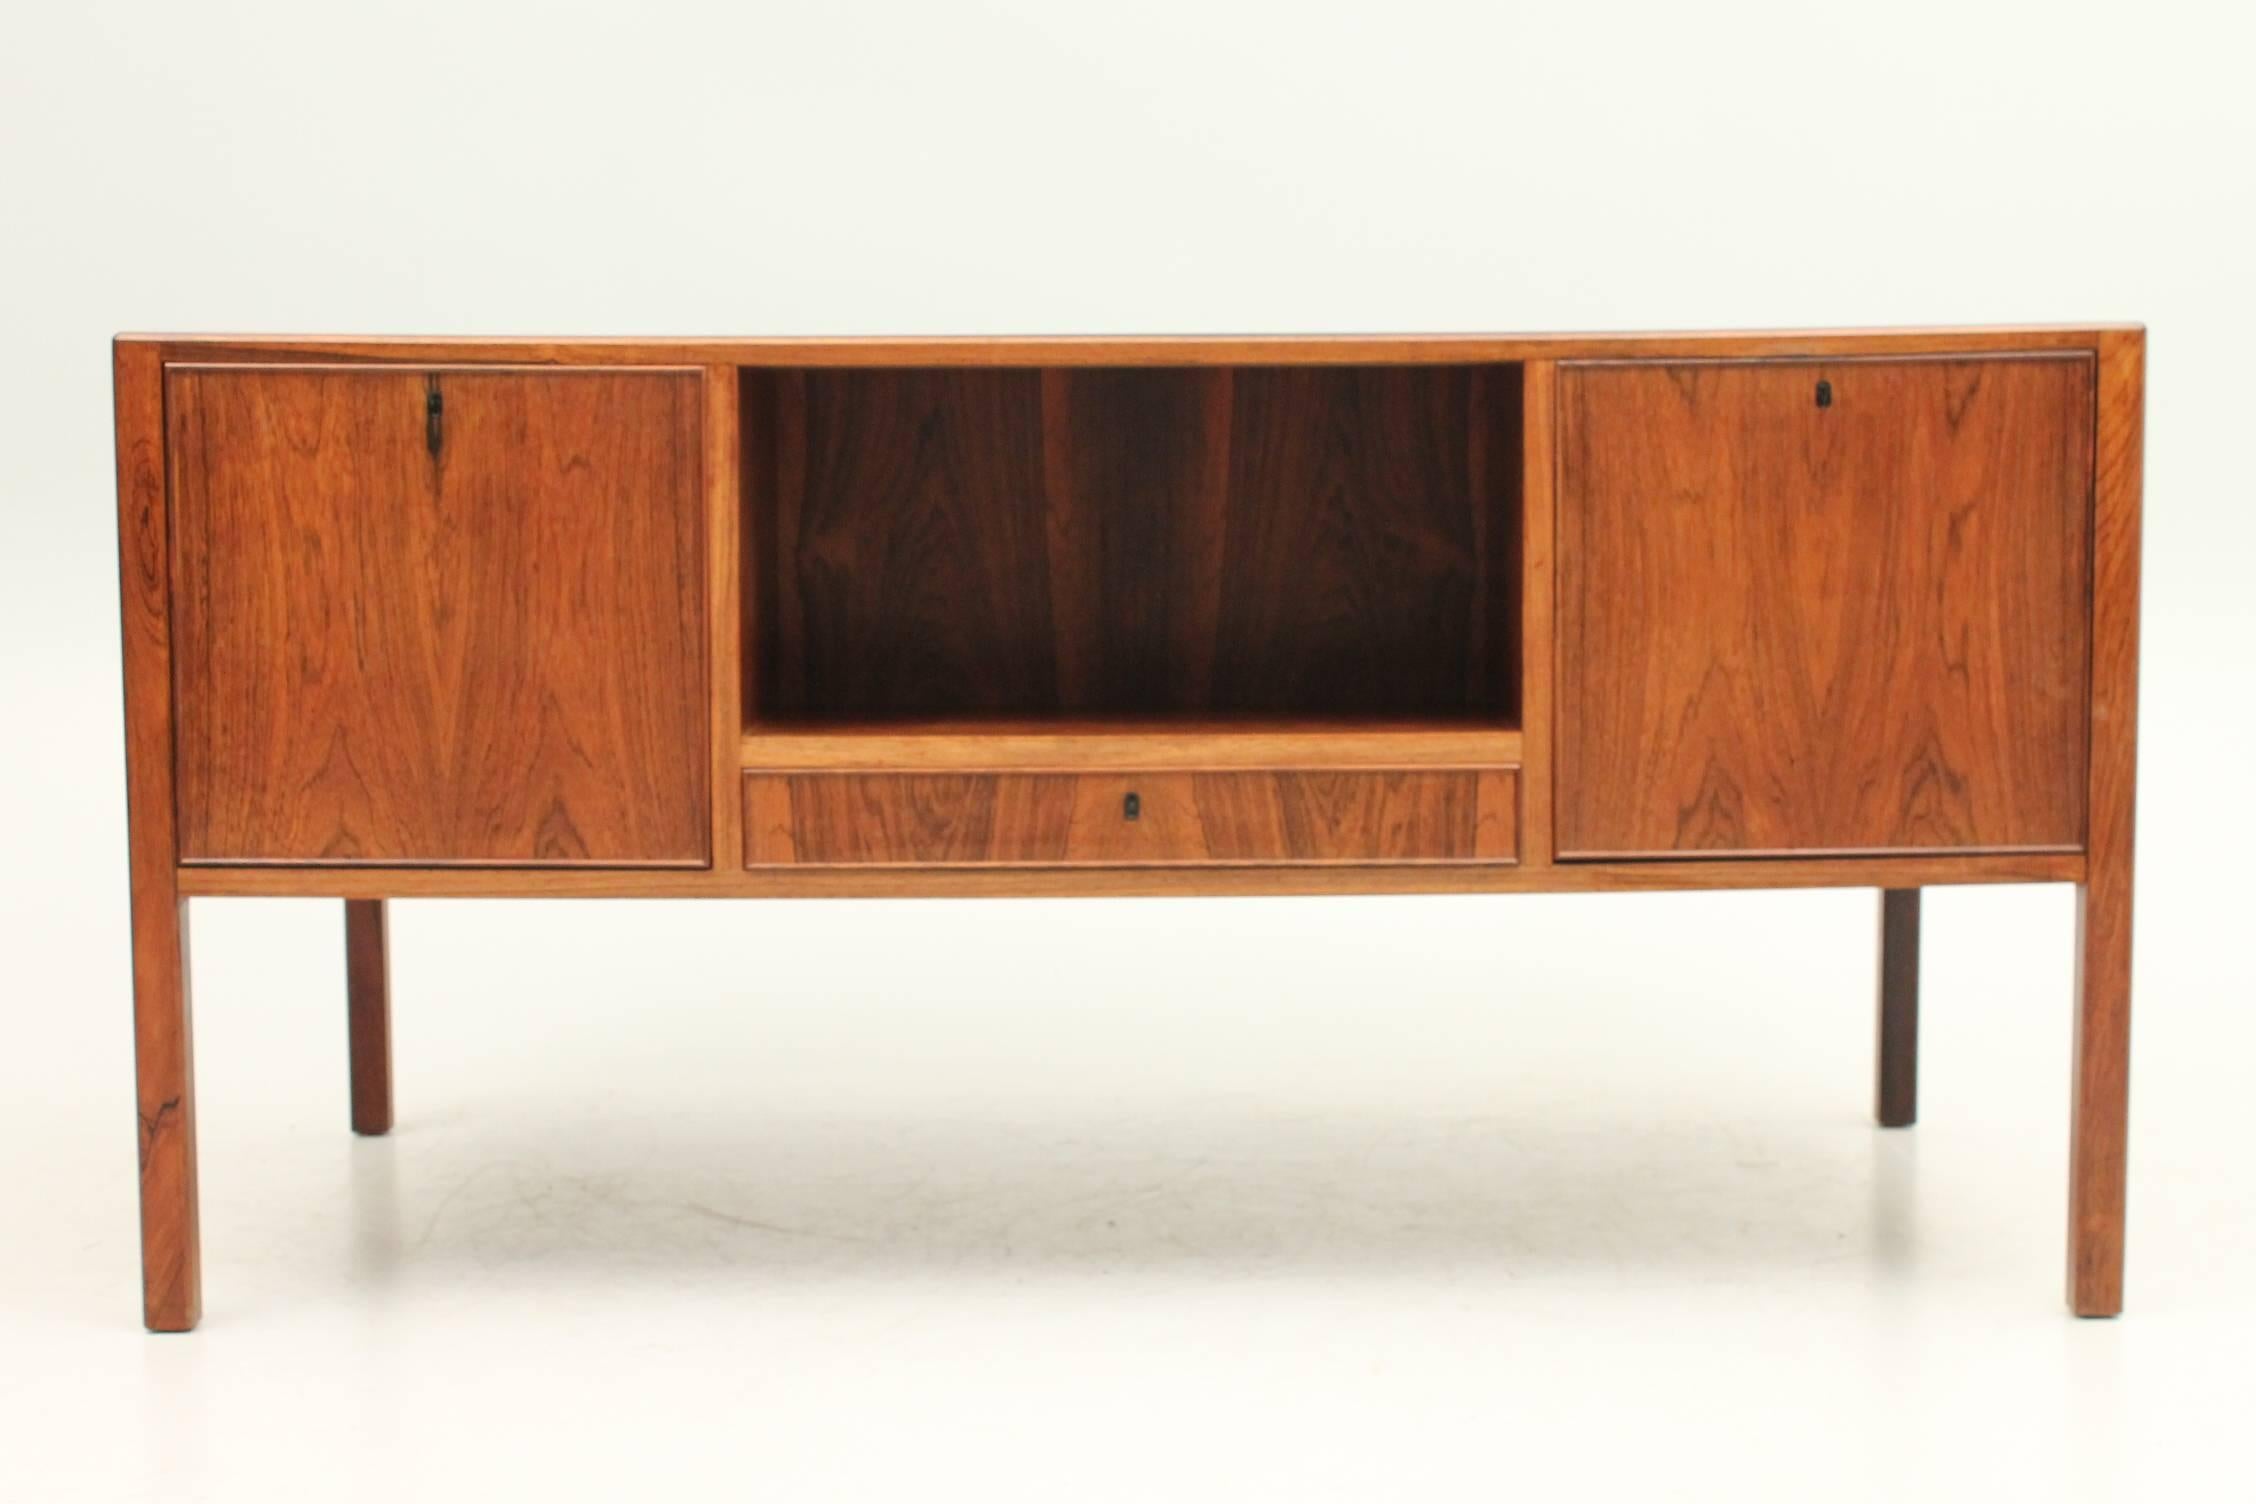 Scandinavian Modern Rosewood Desk by Arne Vodder for Helge Sibast, 1955 - Danish, Mid Century For Sale